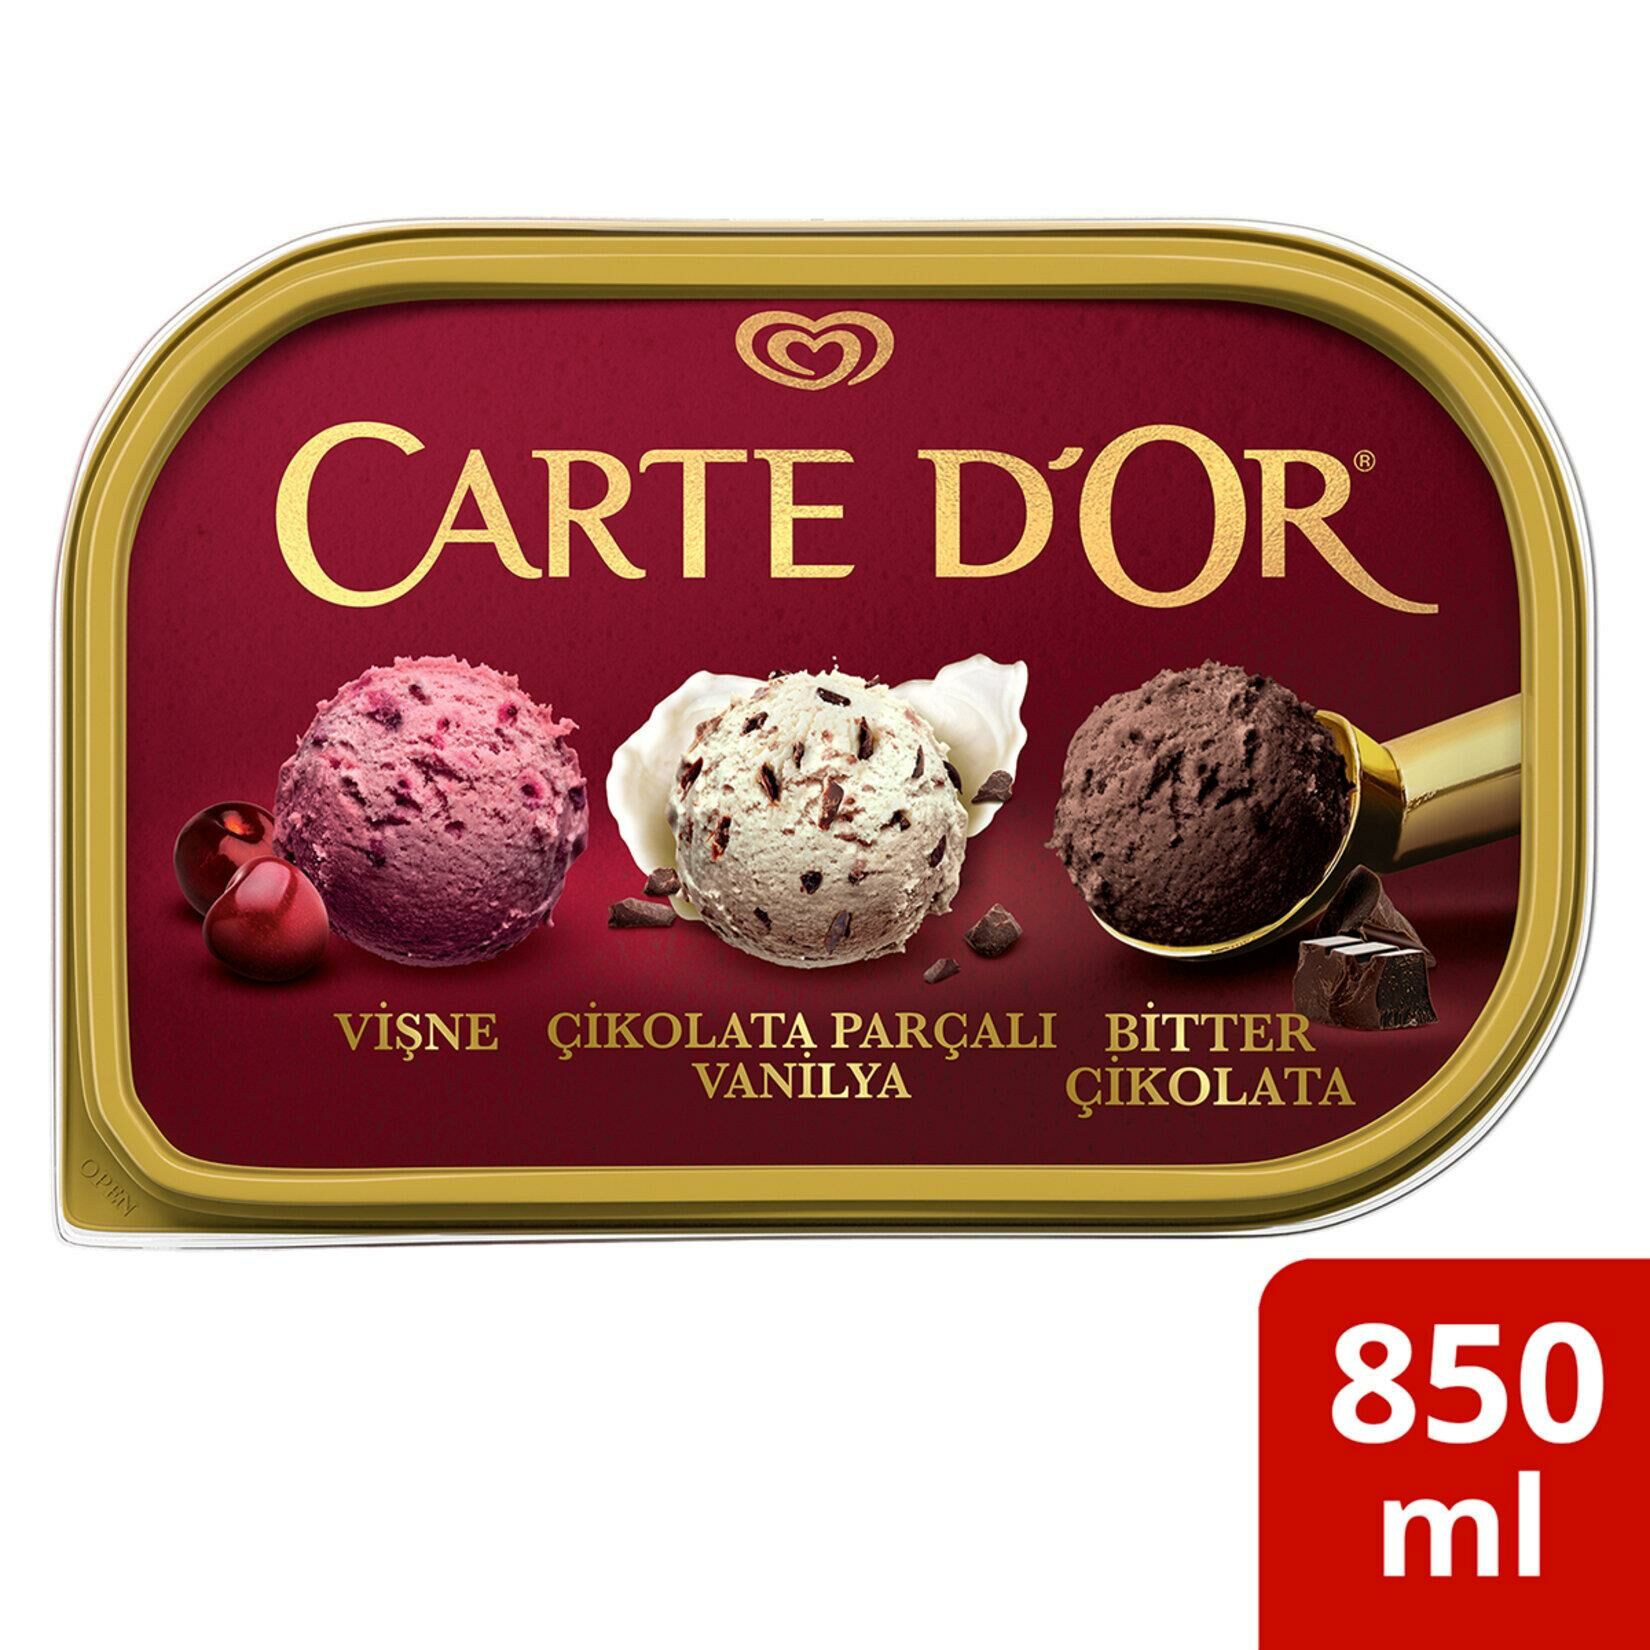 Algida Carte Dor Selection Vişneli Çikolata Parçacıklı Bitterli 850 Ml